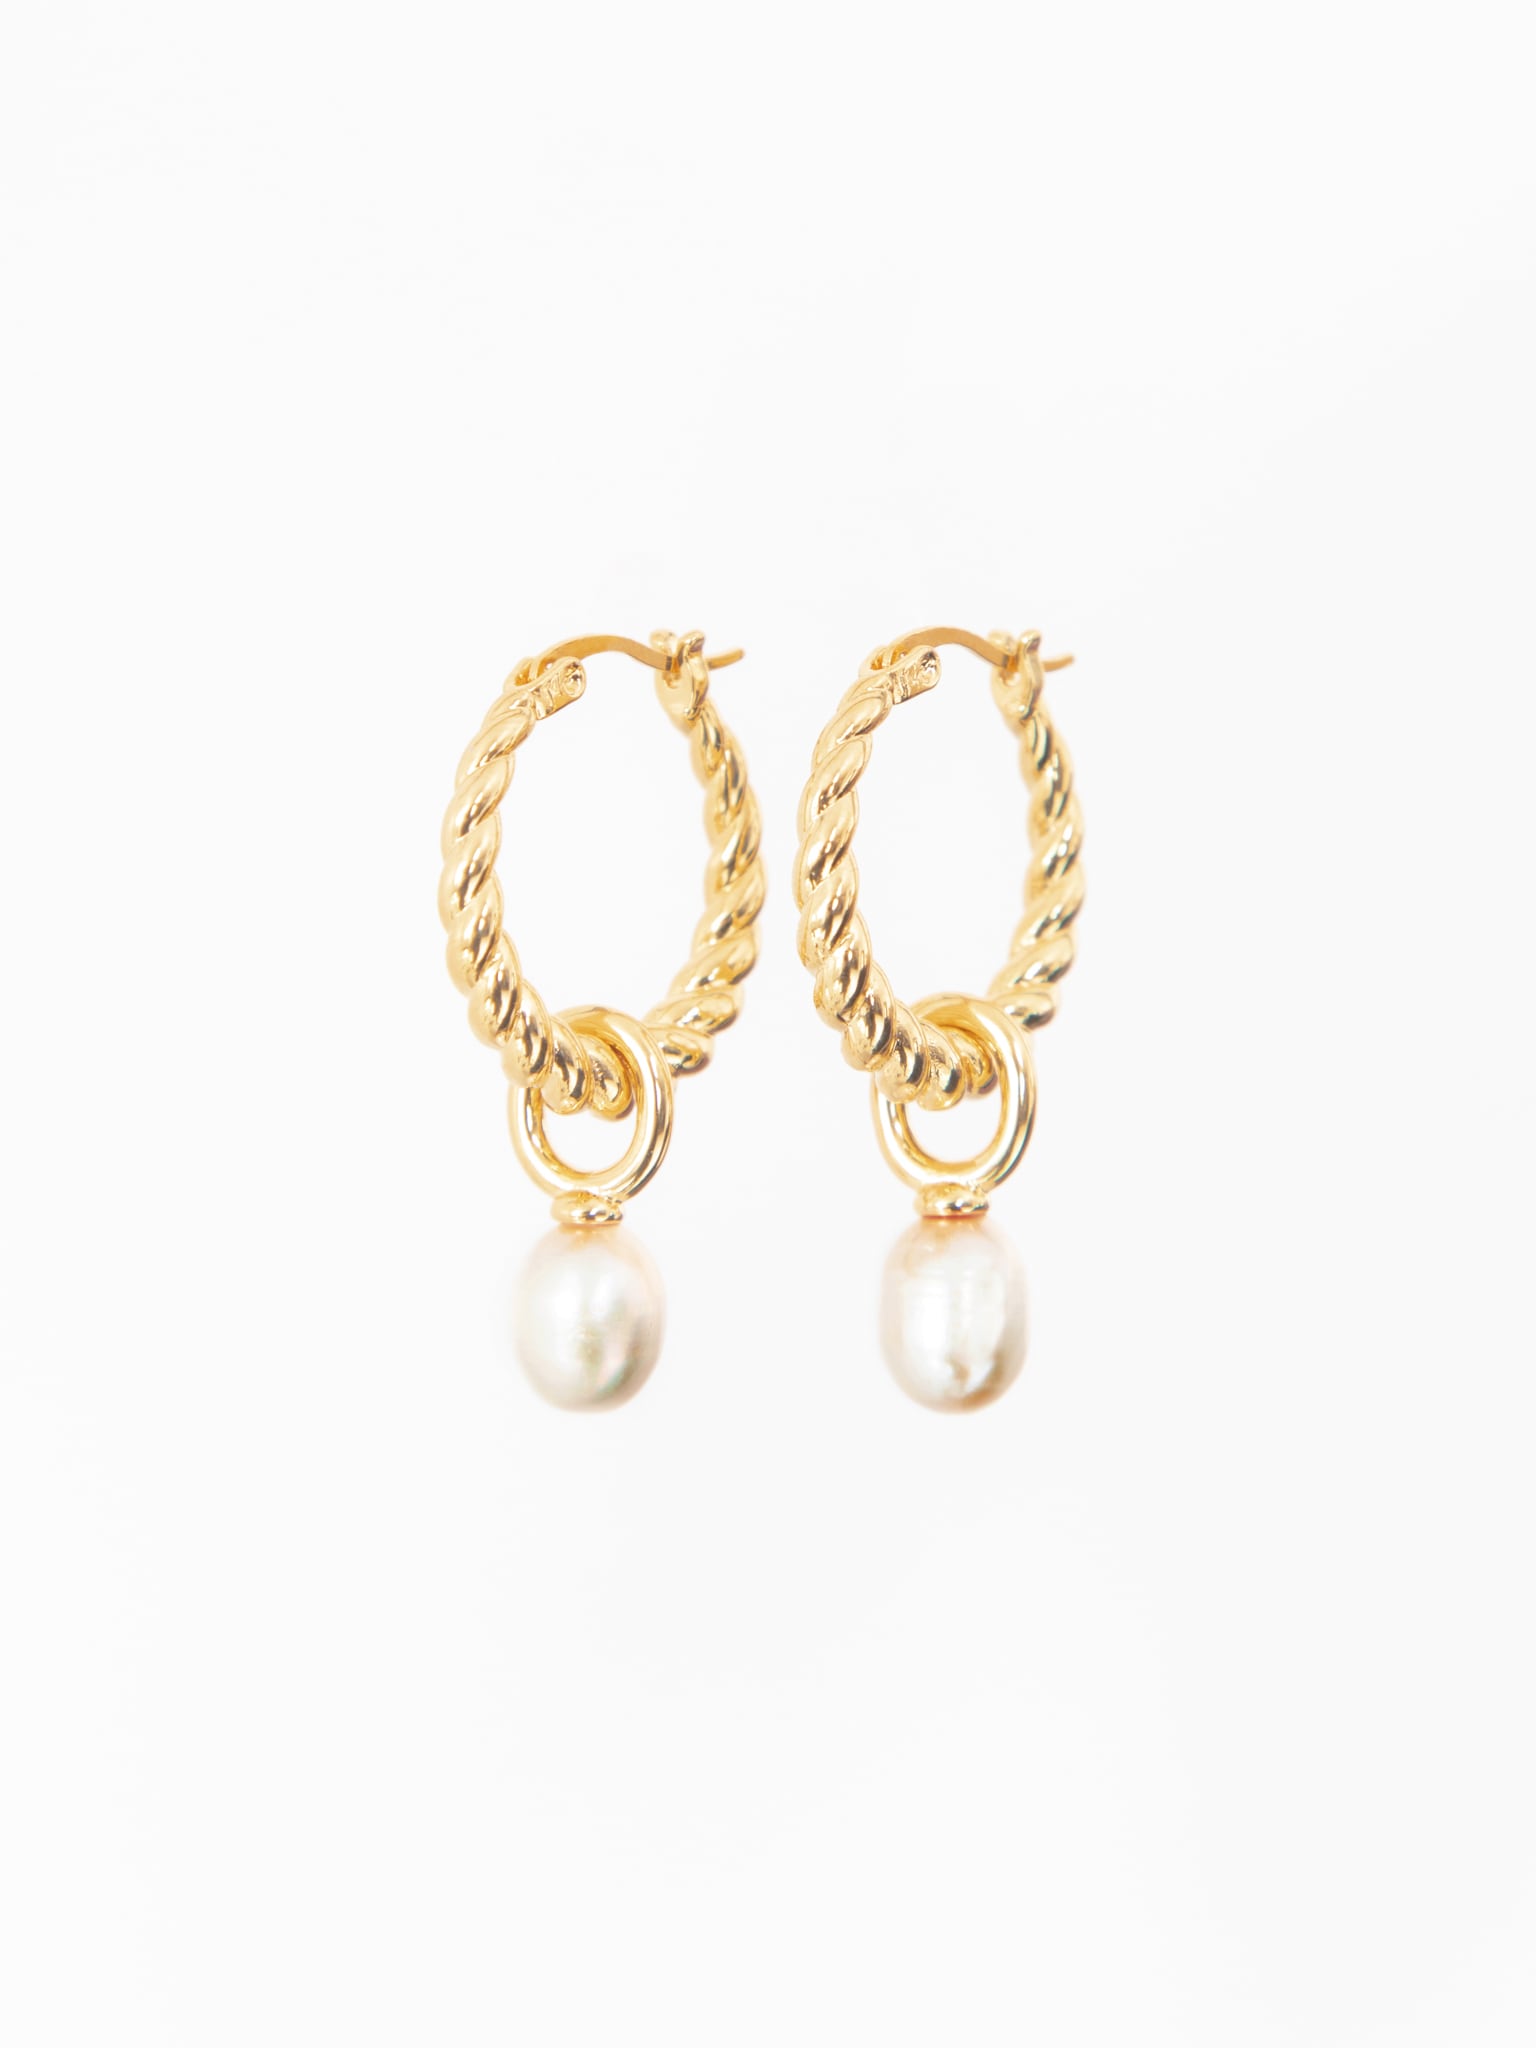 Vintage-style pearl earrings